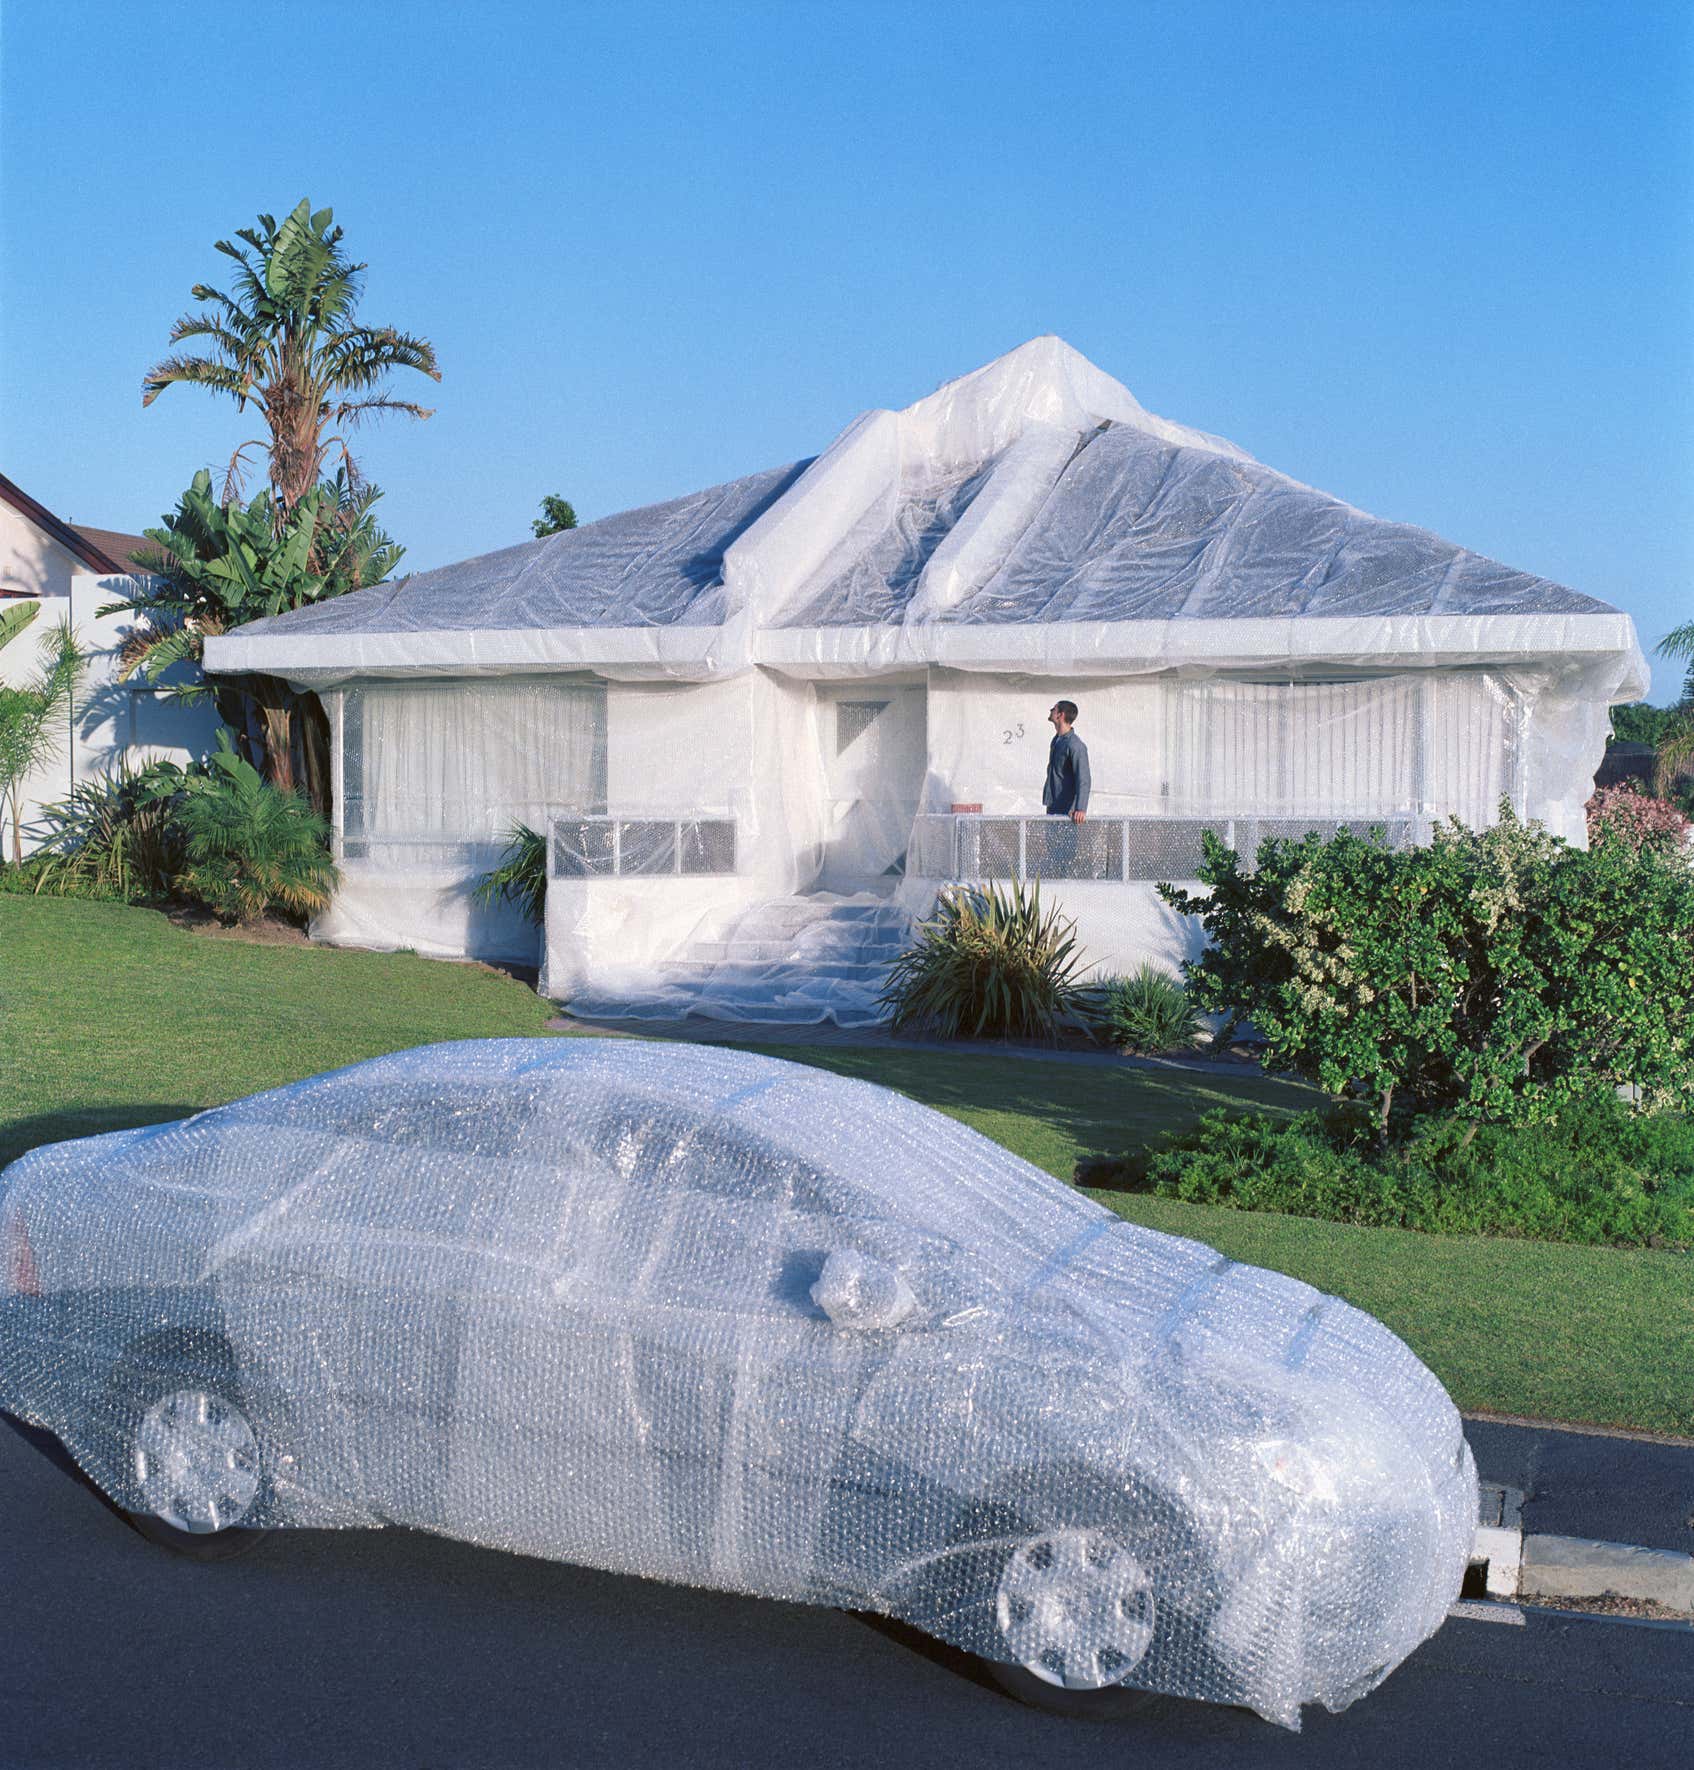 泡沫包裹的汽车和房子。